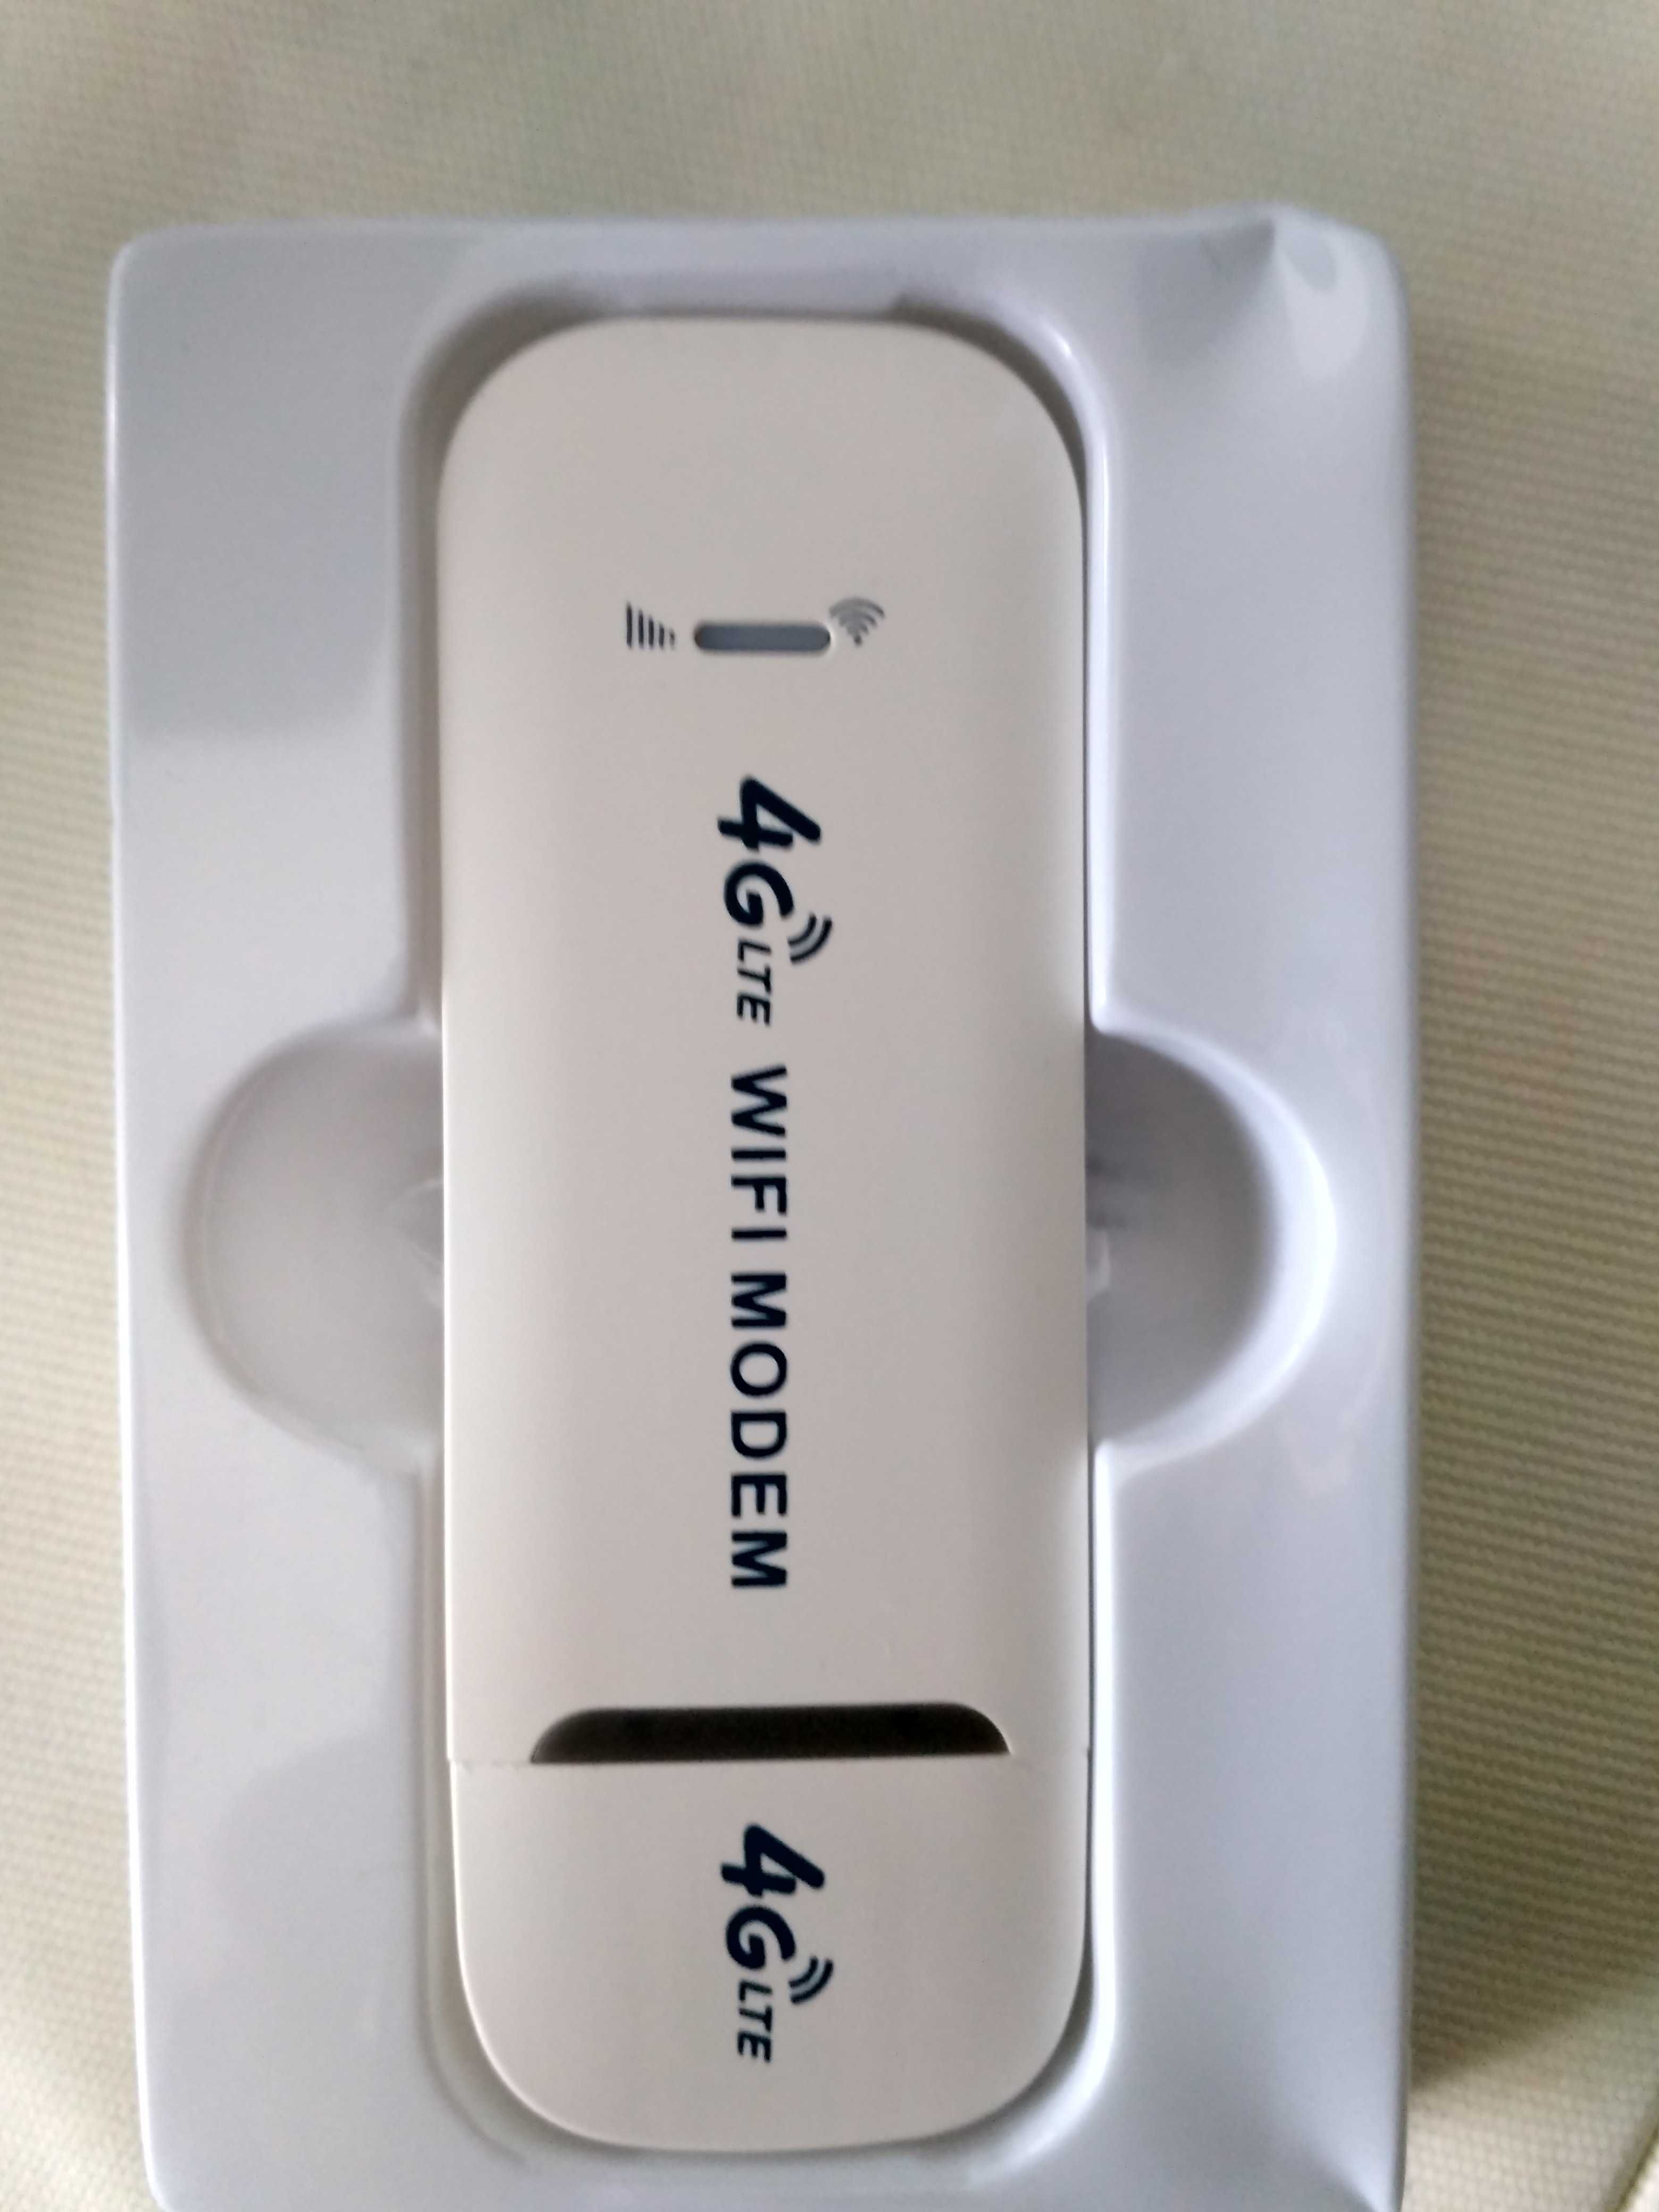 USB wifi 4g lte 3g модем раздает интернет достаточно подать питание